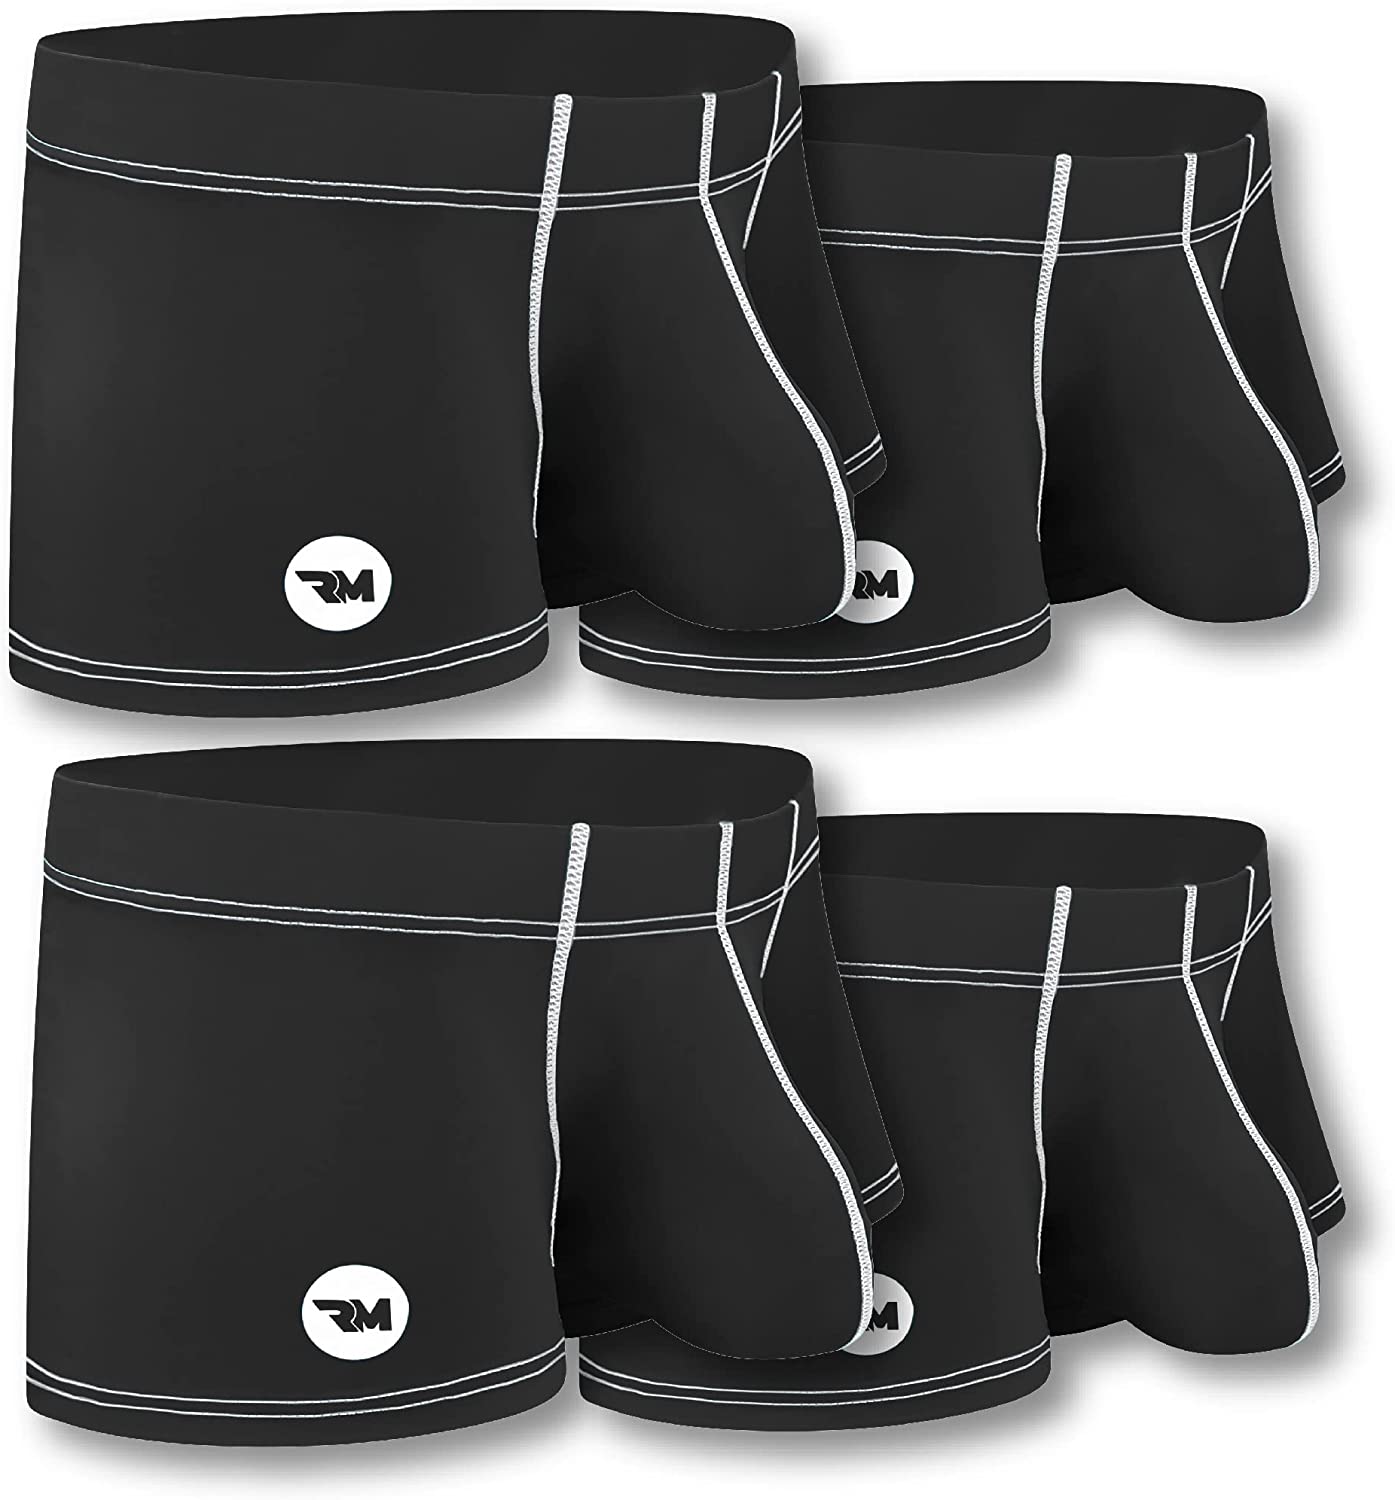 Gubotare Brief For Men Underwear Men's Enhancing Underwear Briefs Ice Silk  Big Ball Pouch Briefs for Male Pack,Black M 